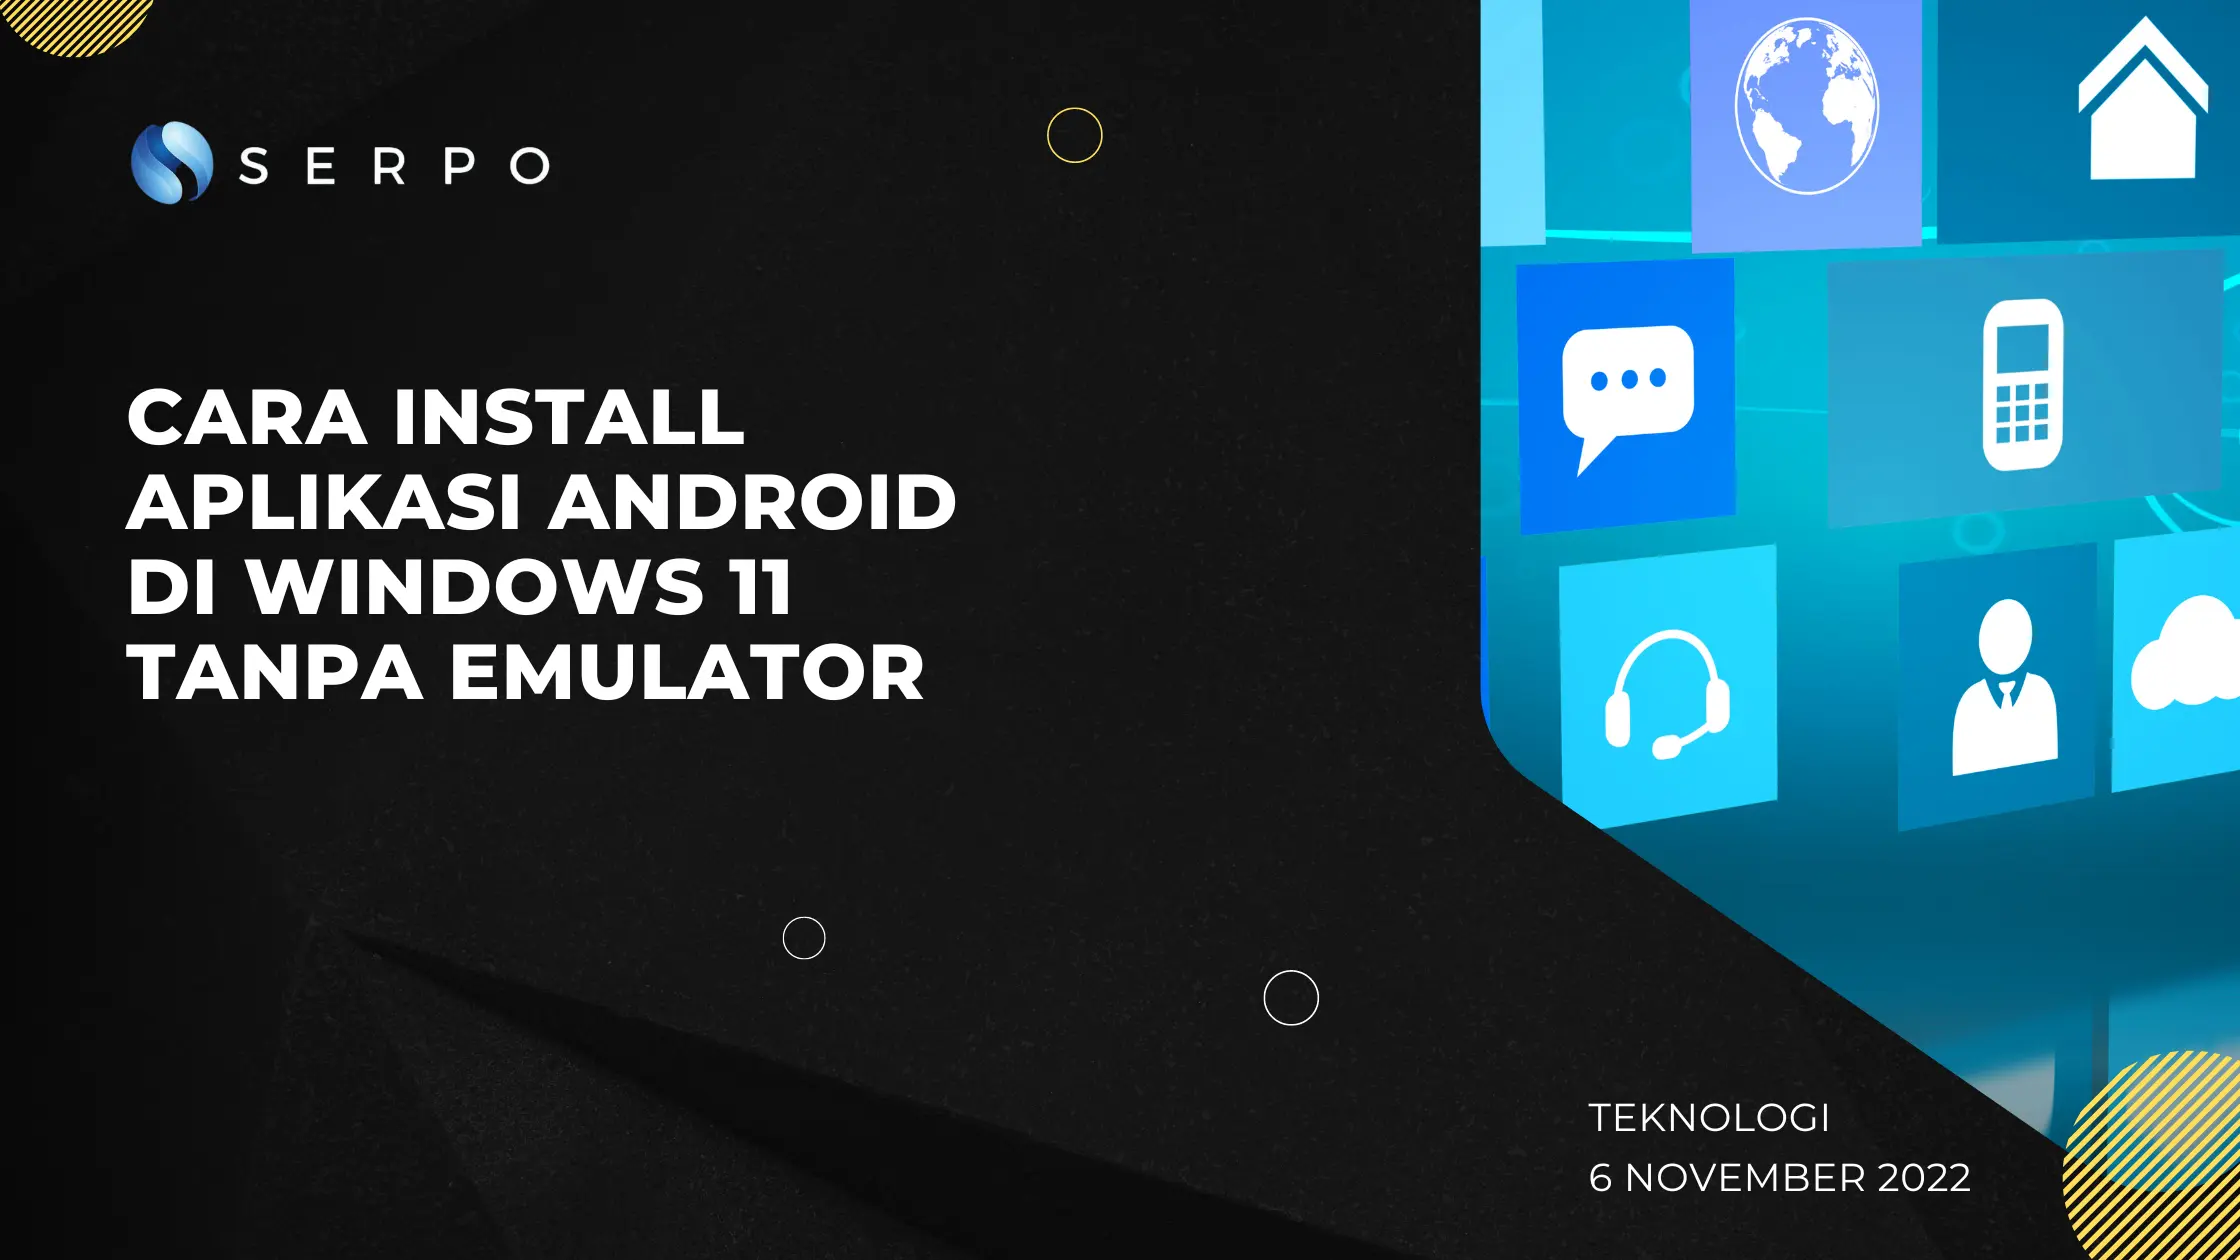 Cara instal aplikasi android windows 10 dalam tampa emulator.